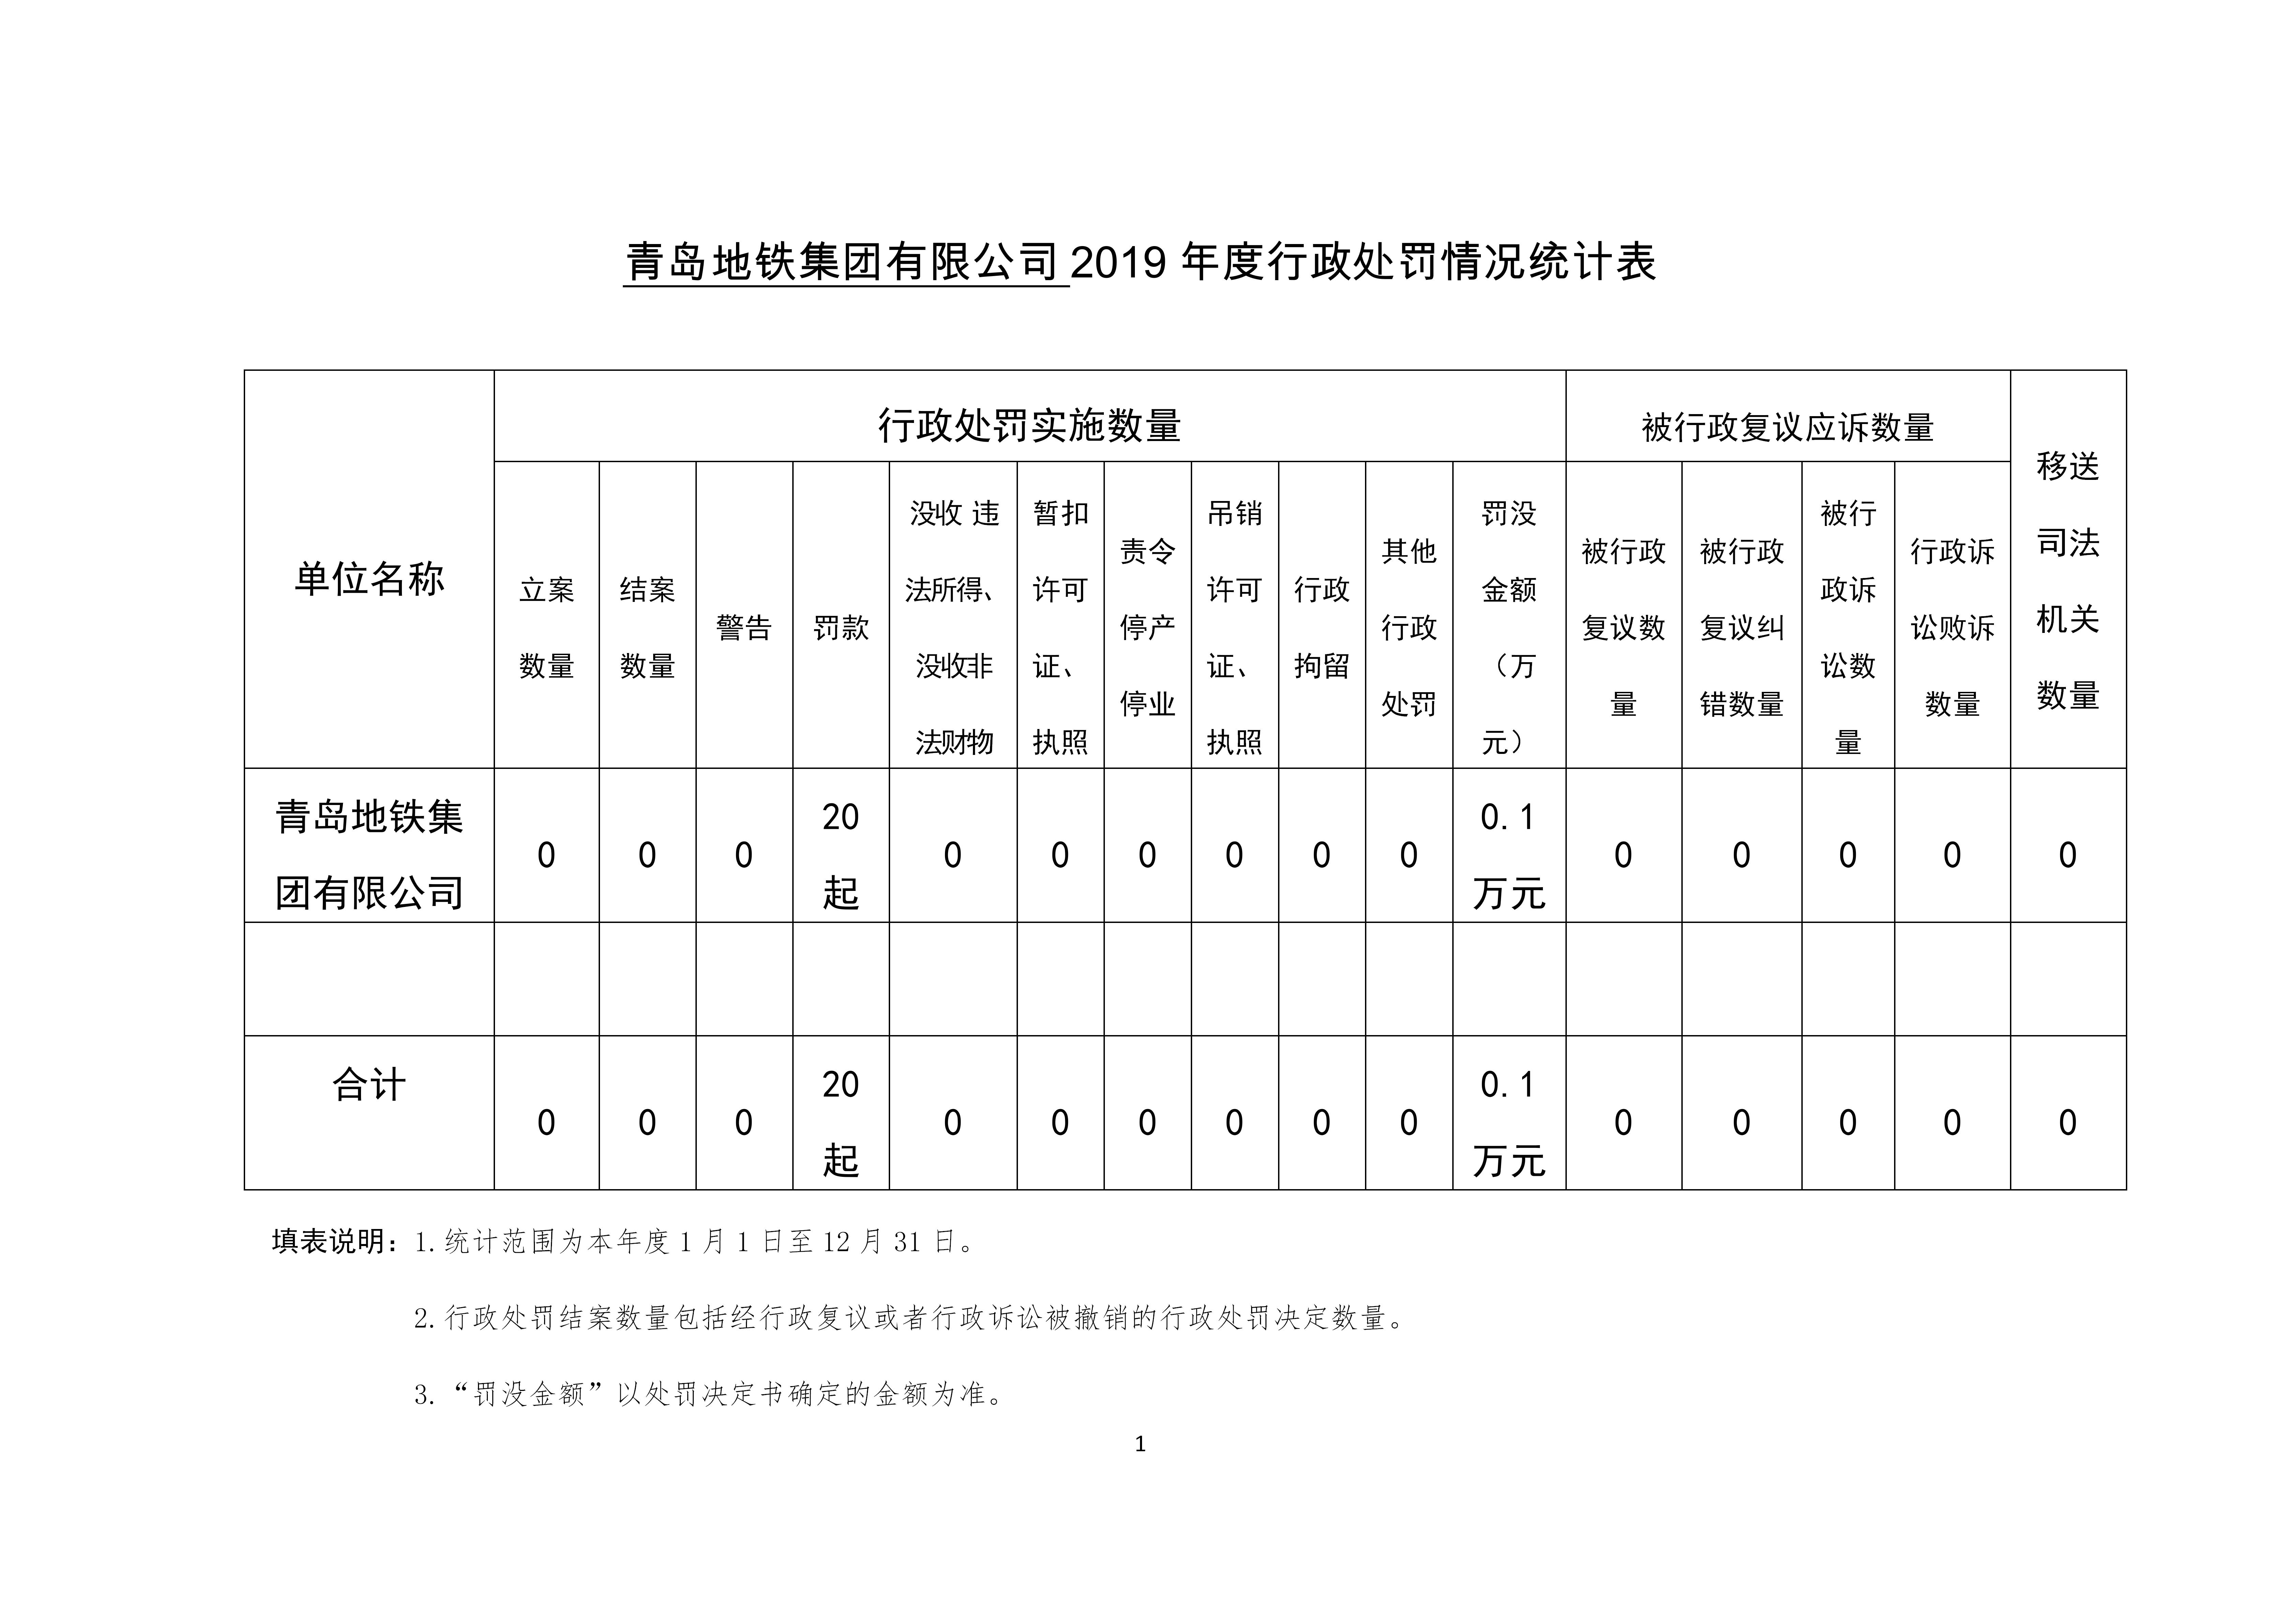 青島地鐵集團有限公司2019年度行政處罰情況統計表_01.jpg